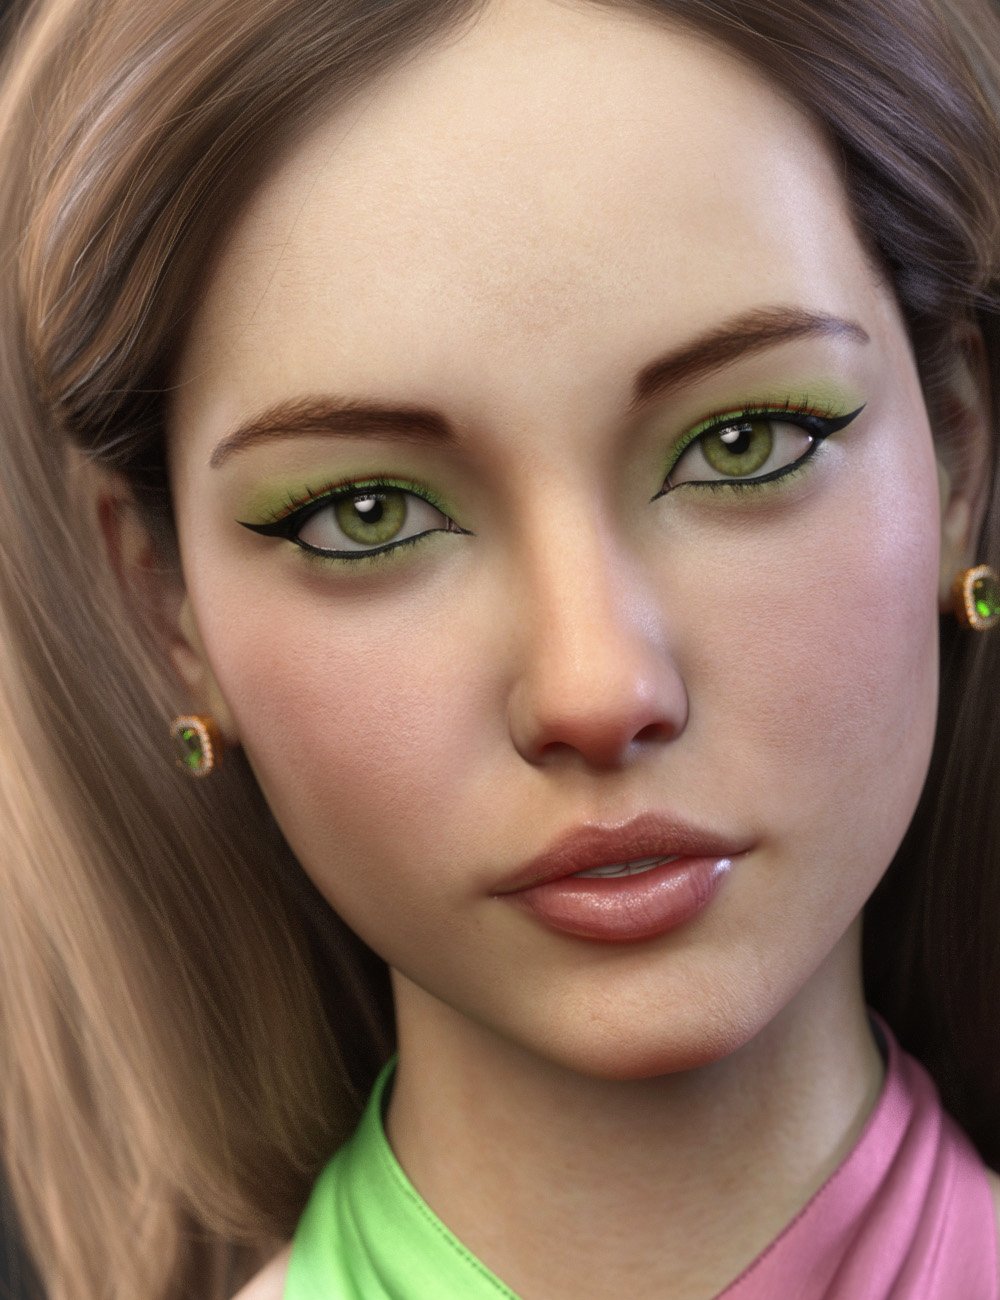 Ciel for Genesis 8 Female by: Cherubit, 3D Models by Daz 3D